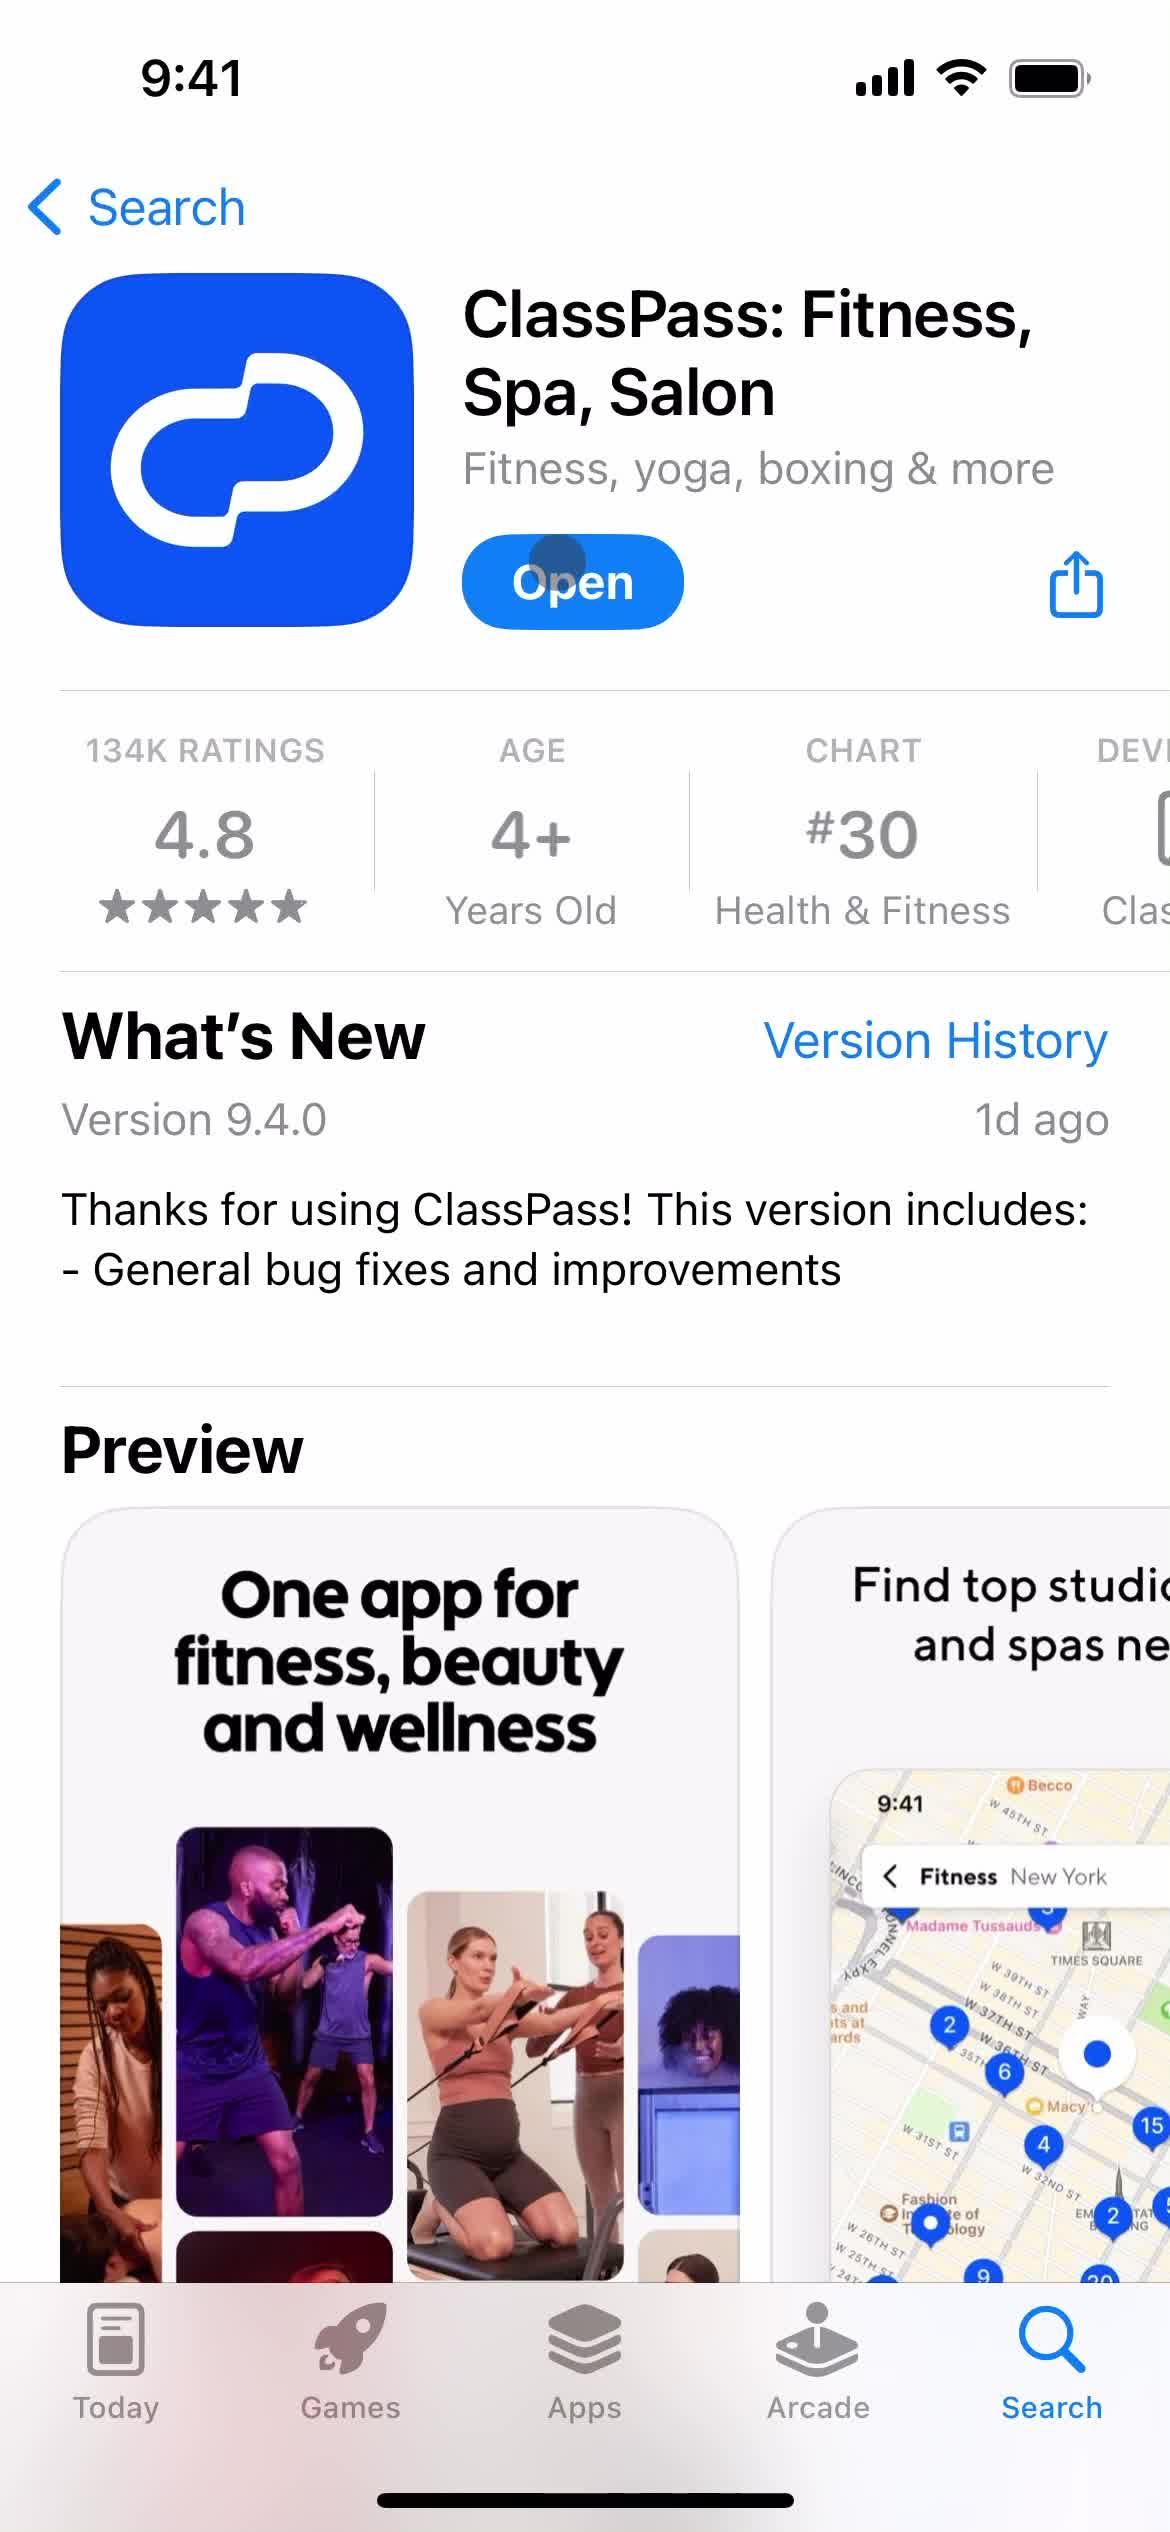 ClassPass app store listing screenshot